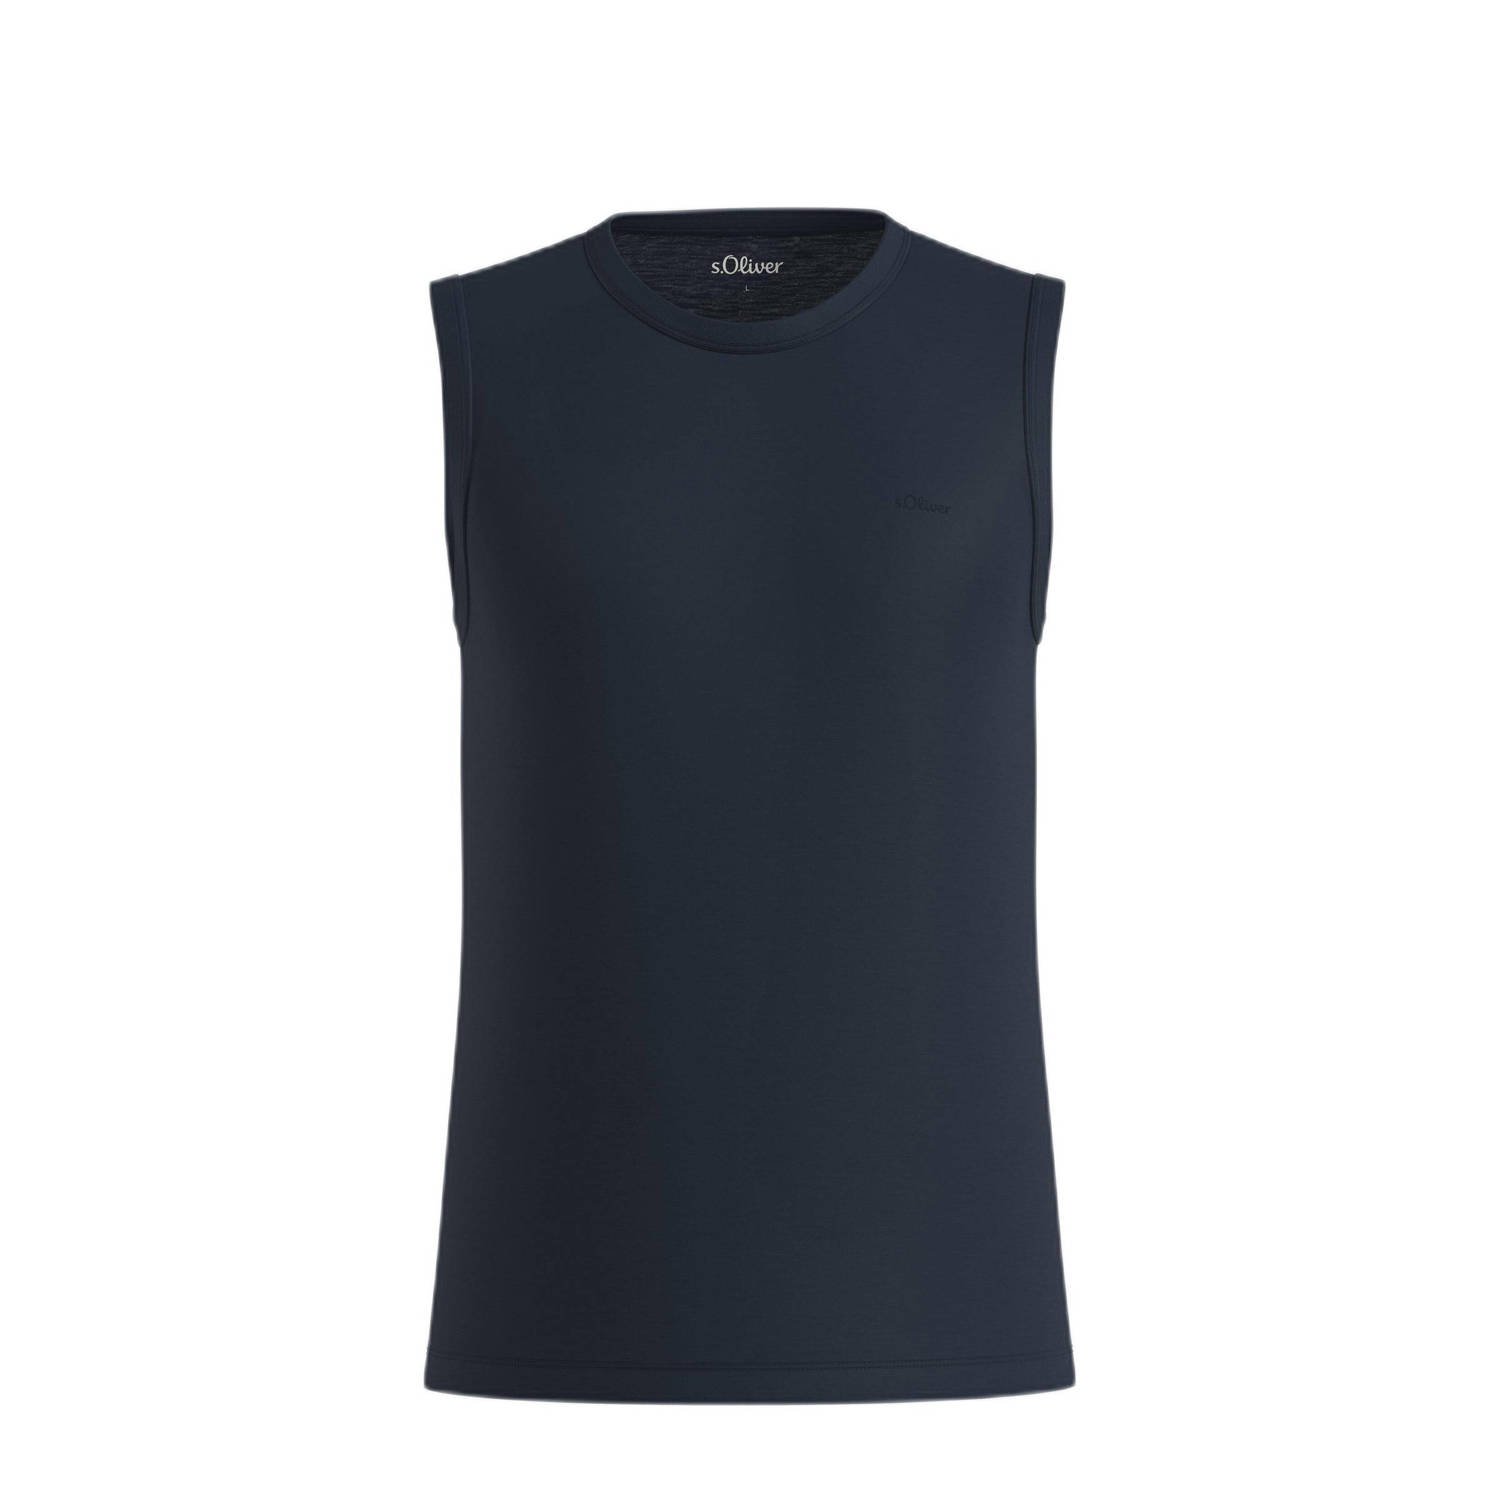 S.Oliver T-shirt blauw zwart